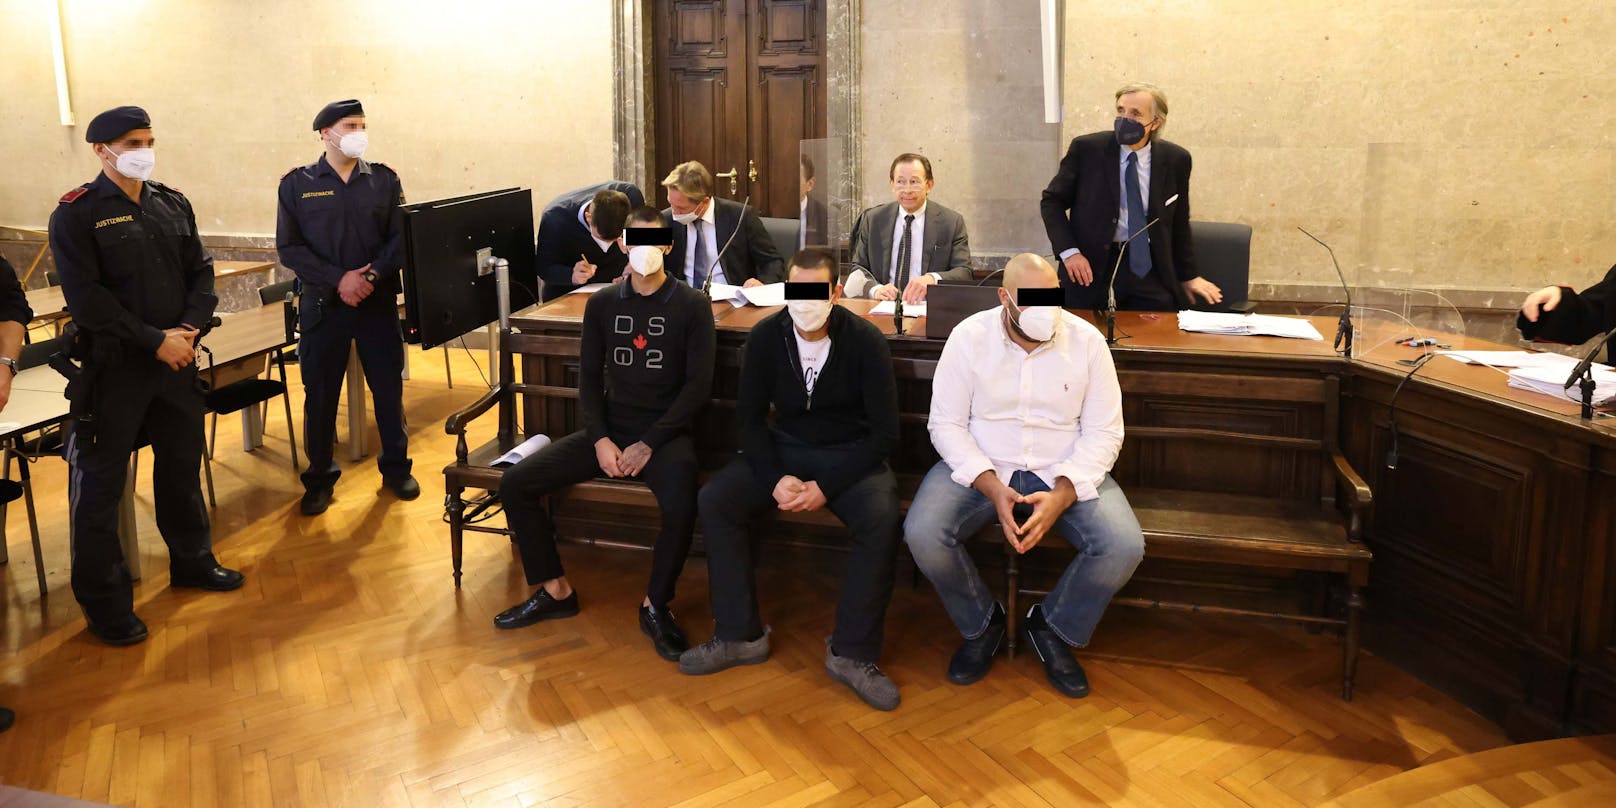 Die angeklagten AKH-Angestellten im Gerichtssaal mit ihren Anwälten (hinten)